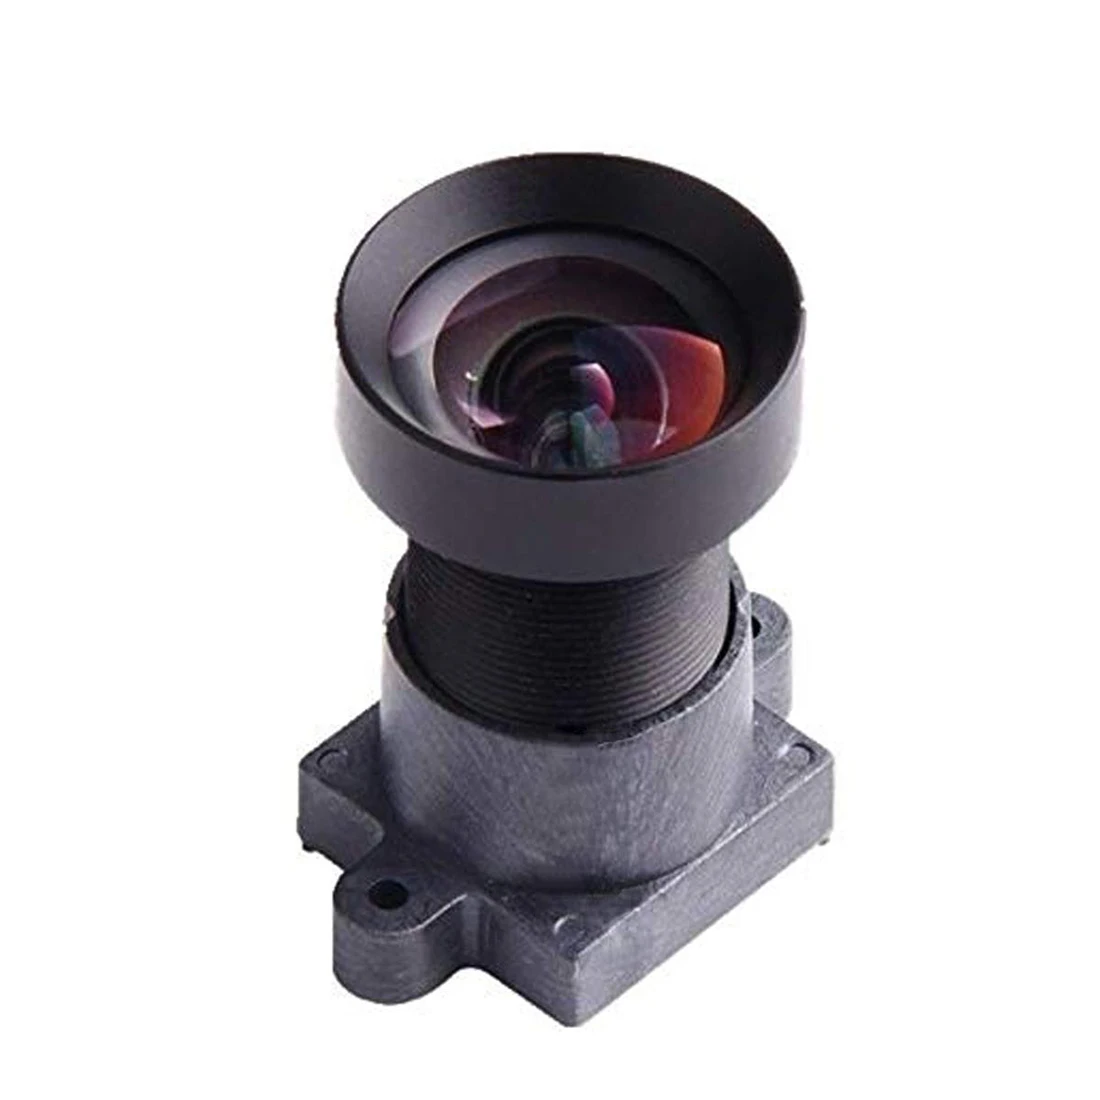 Спорт DV объектив камеры 4K с низким искажением объектив 1/2. 3 дюйма Разрешение 4,35 мм без искажений объектив 10MP F/2,5 HD 72 градусов